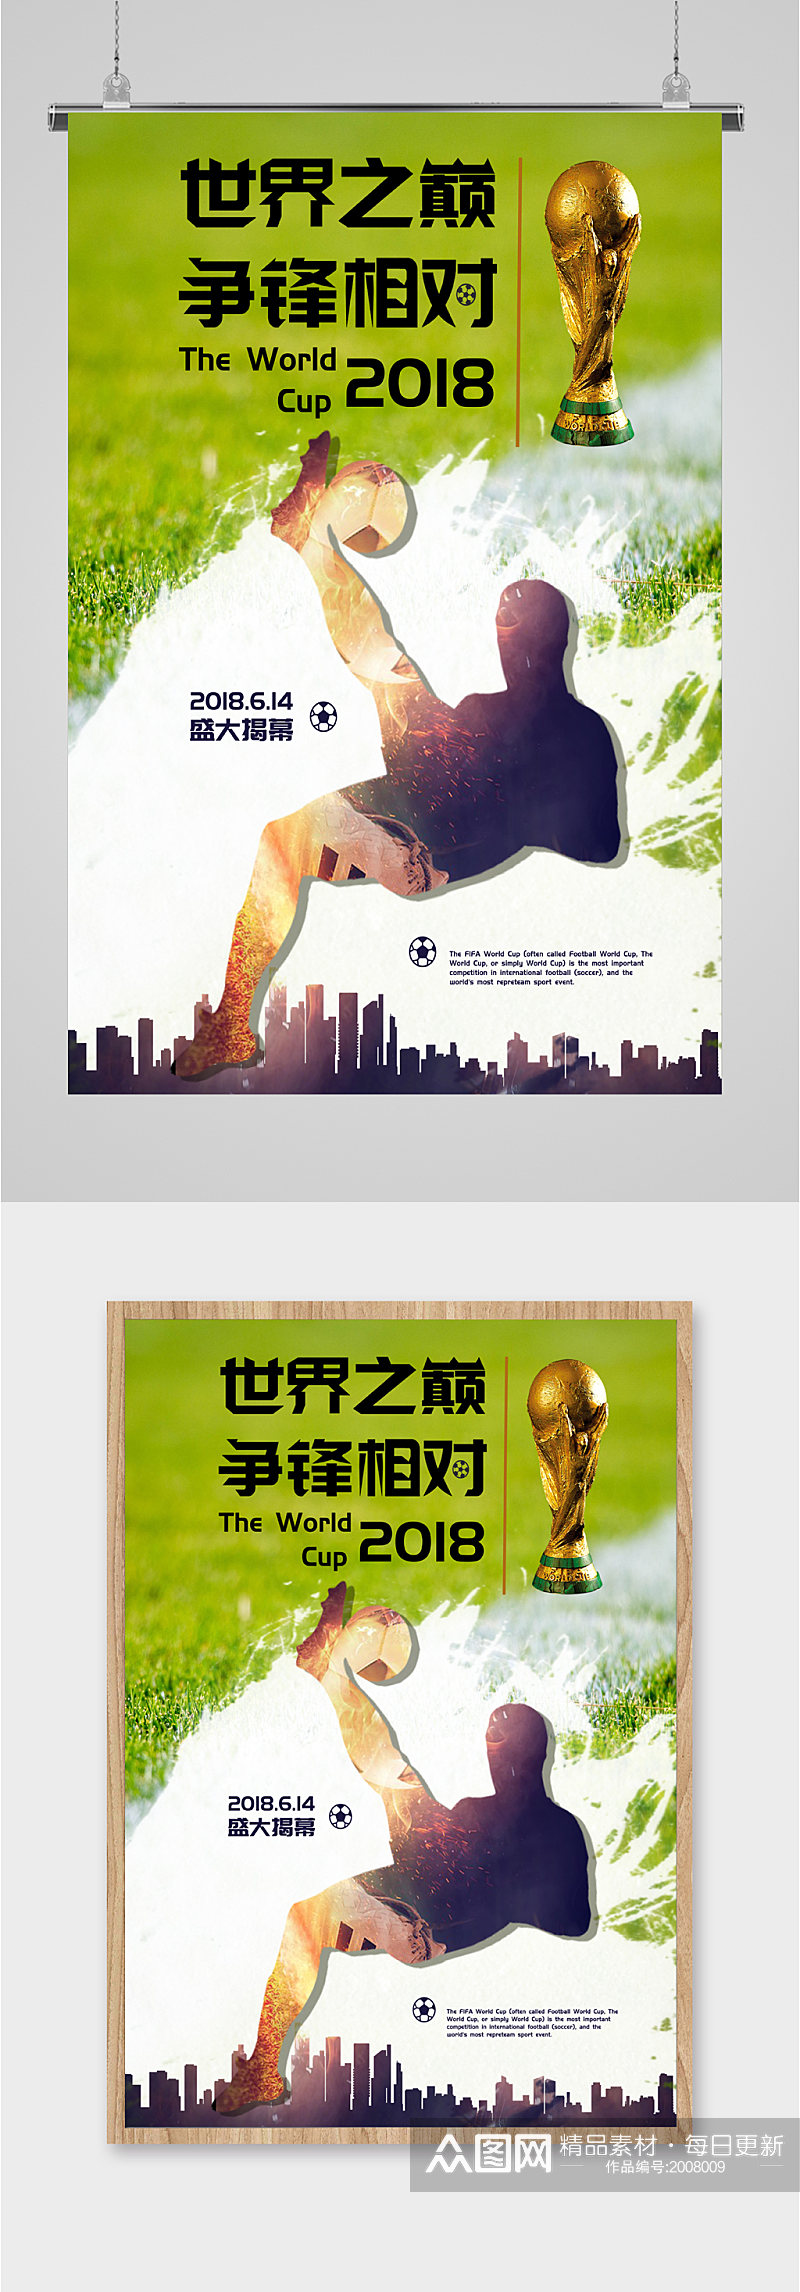 世界杯庆祝宣传海报素材